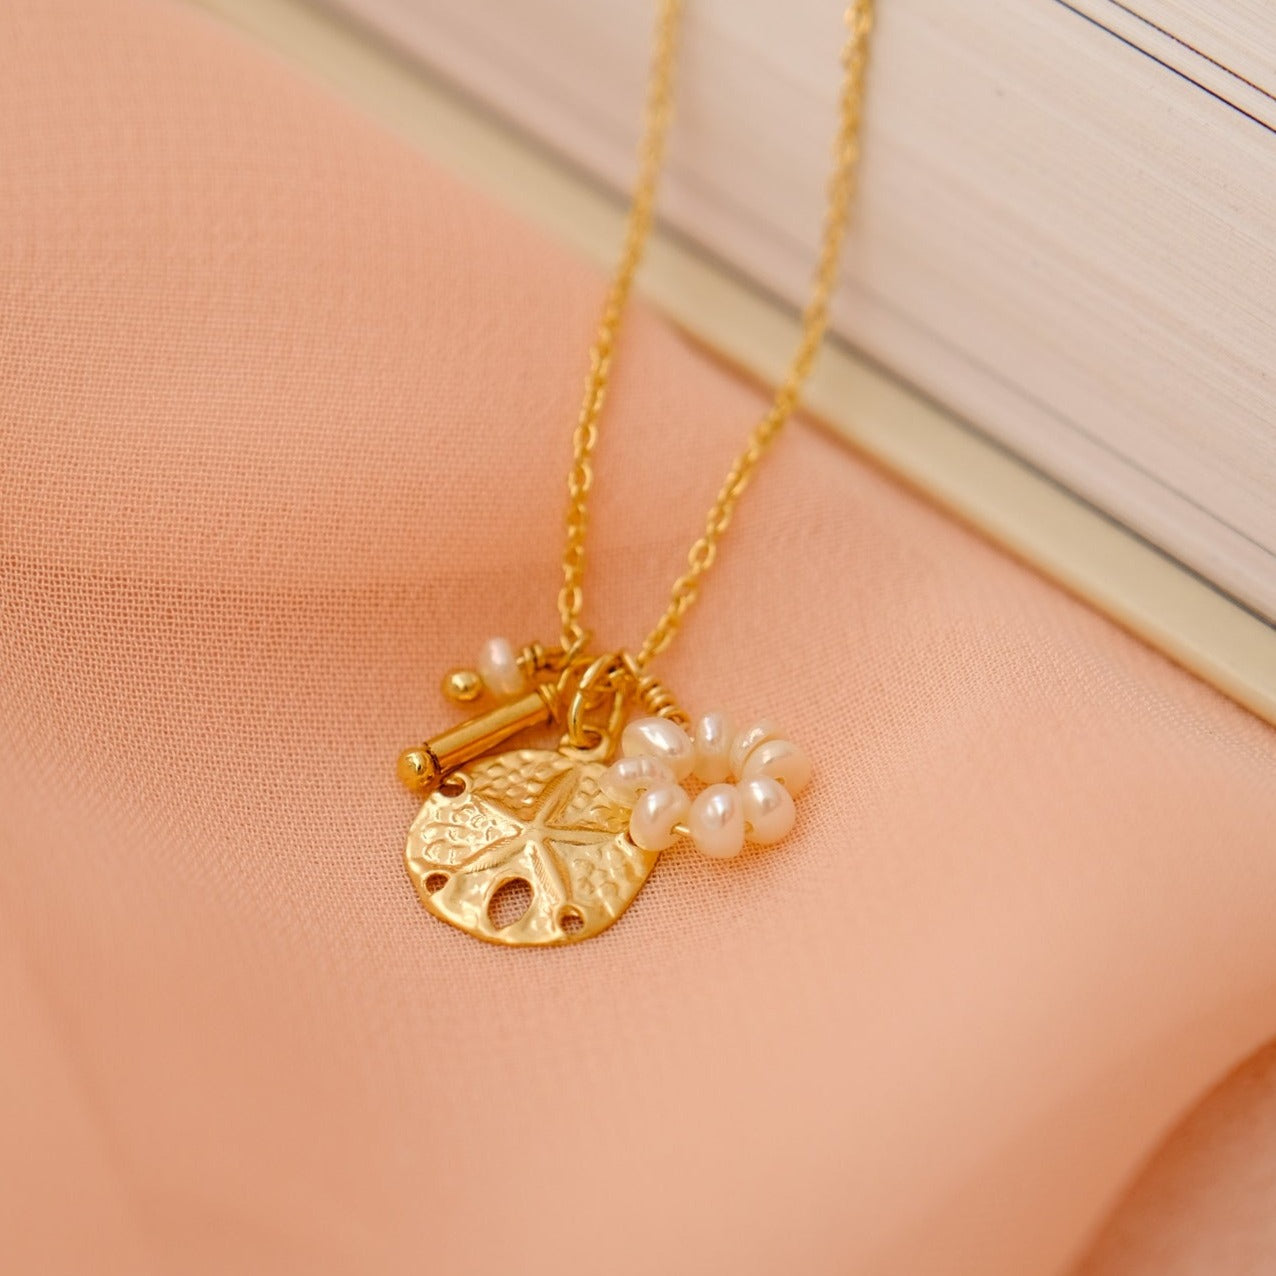 “Ysalis” necklace